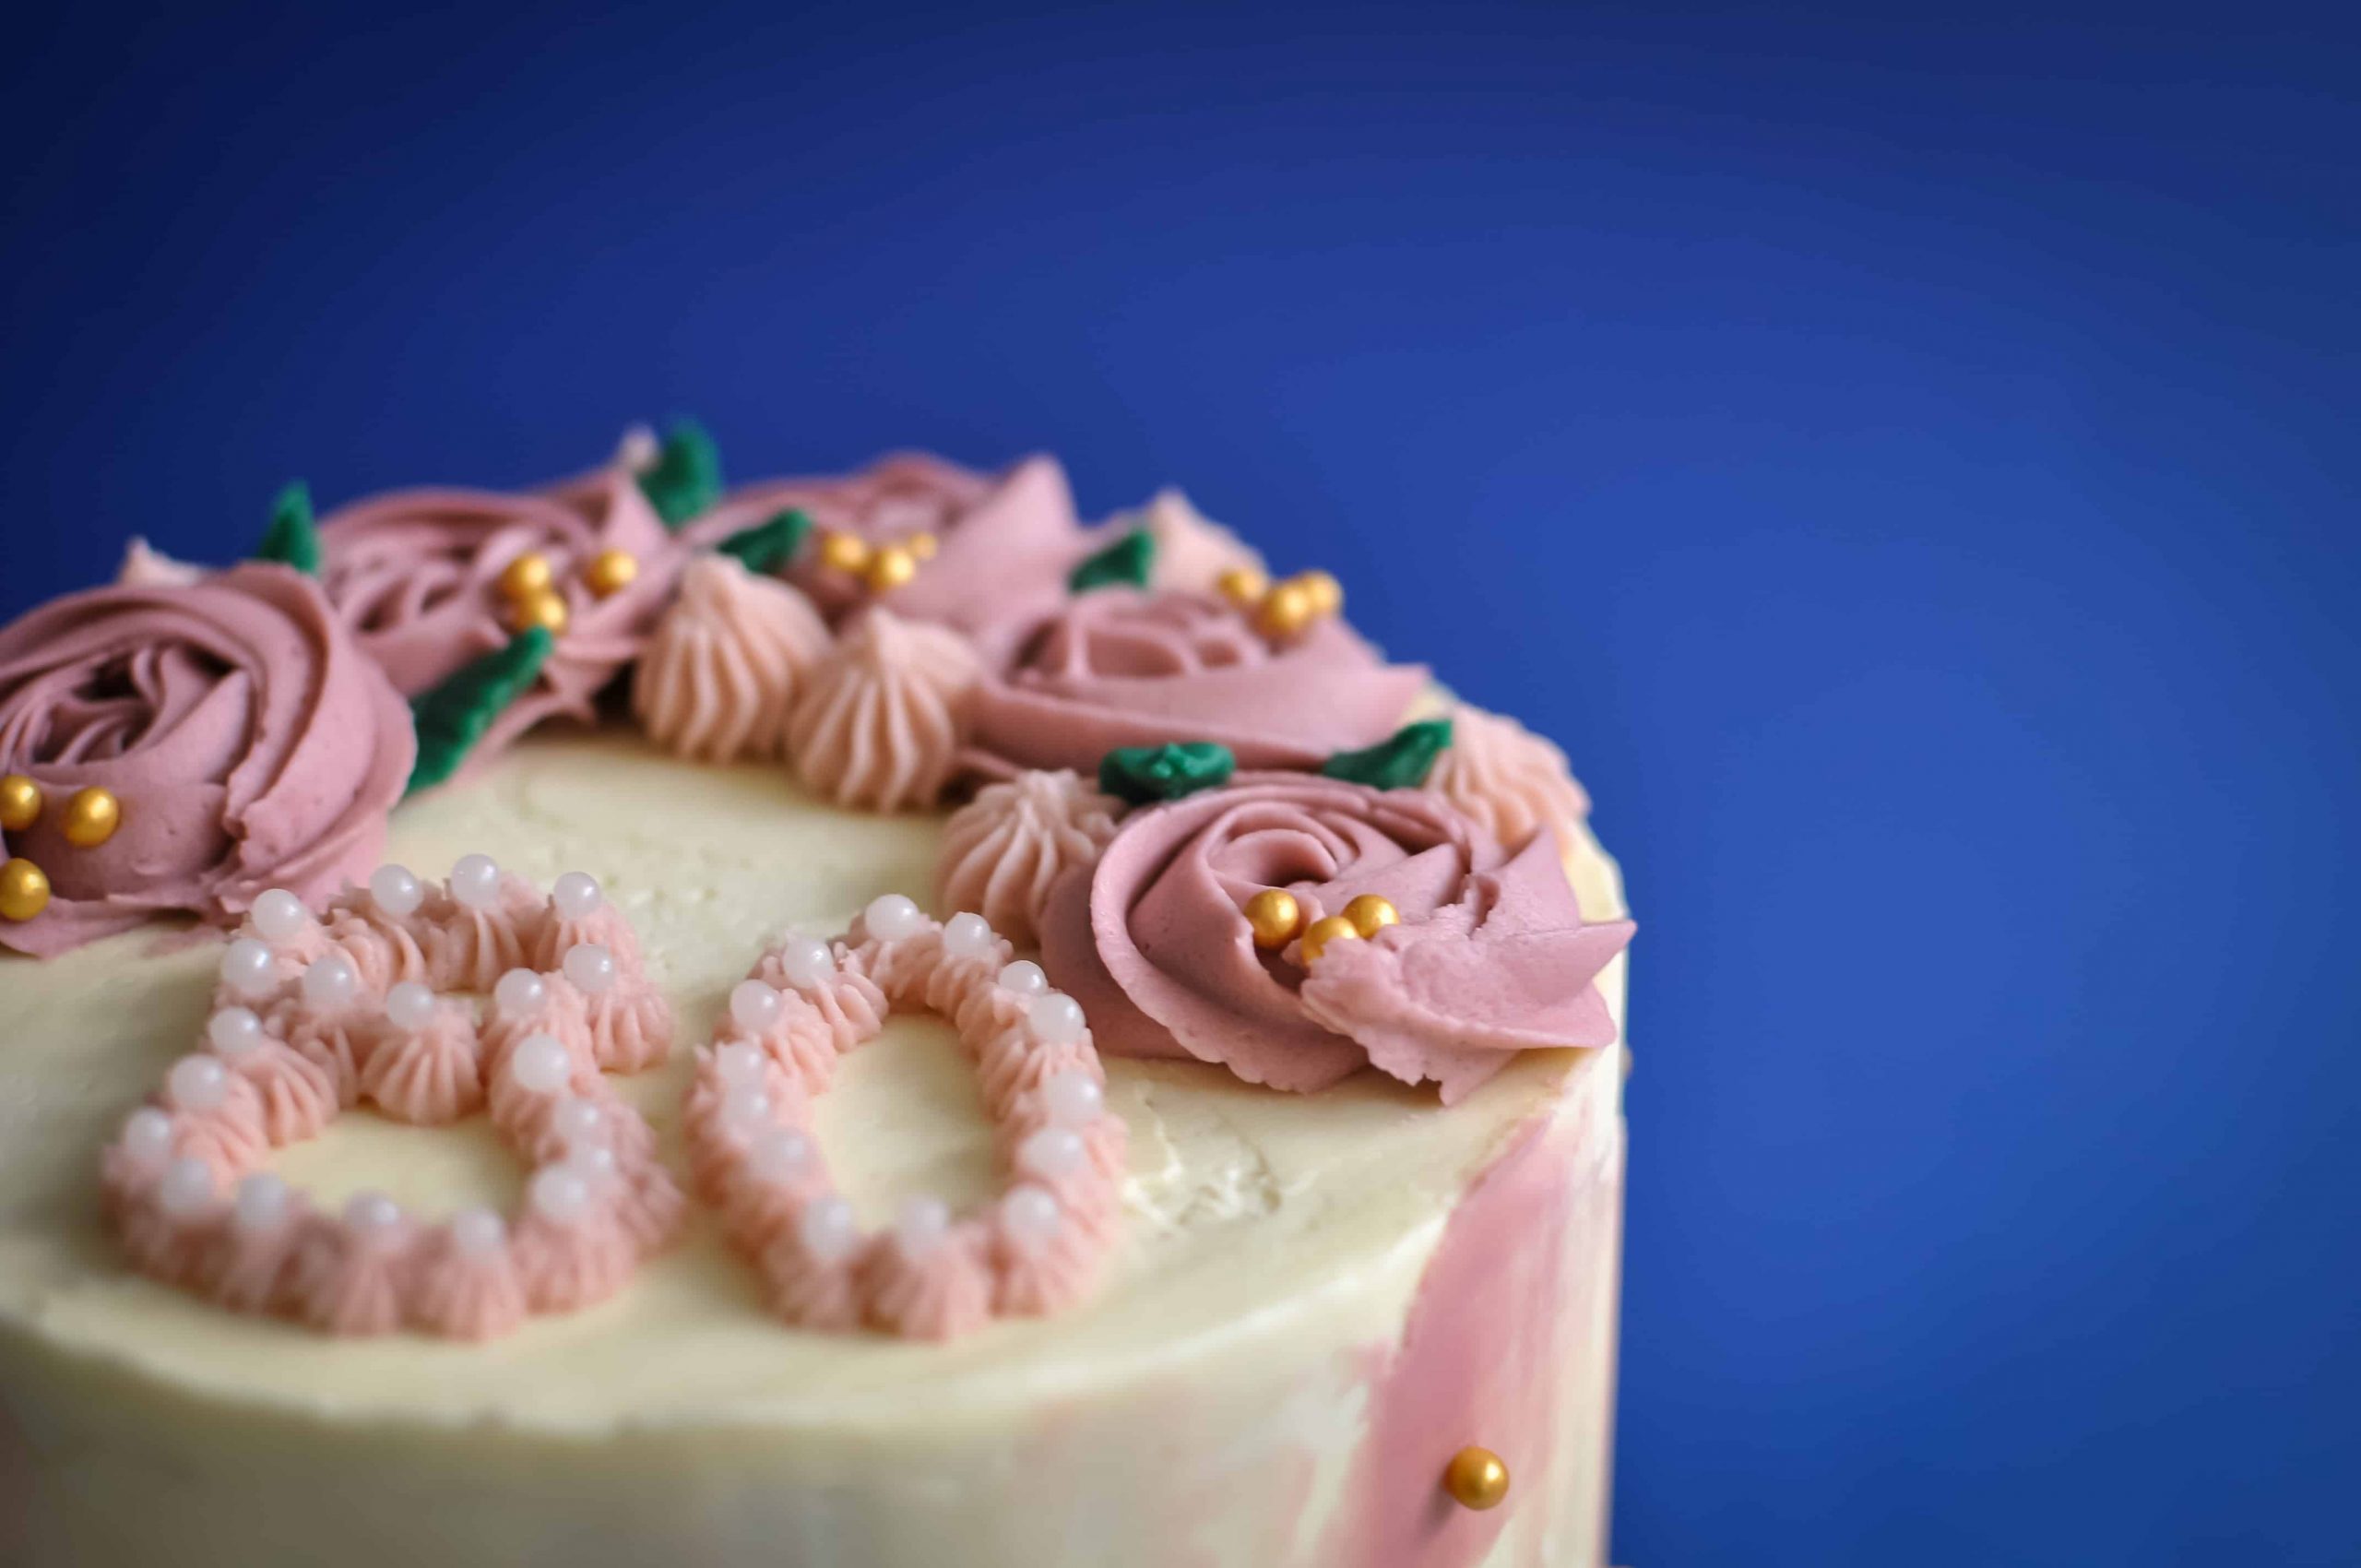 Custom Bespoke Birthday Cake Gallery Image